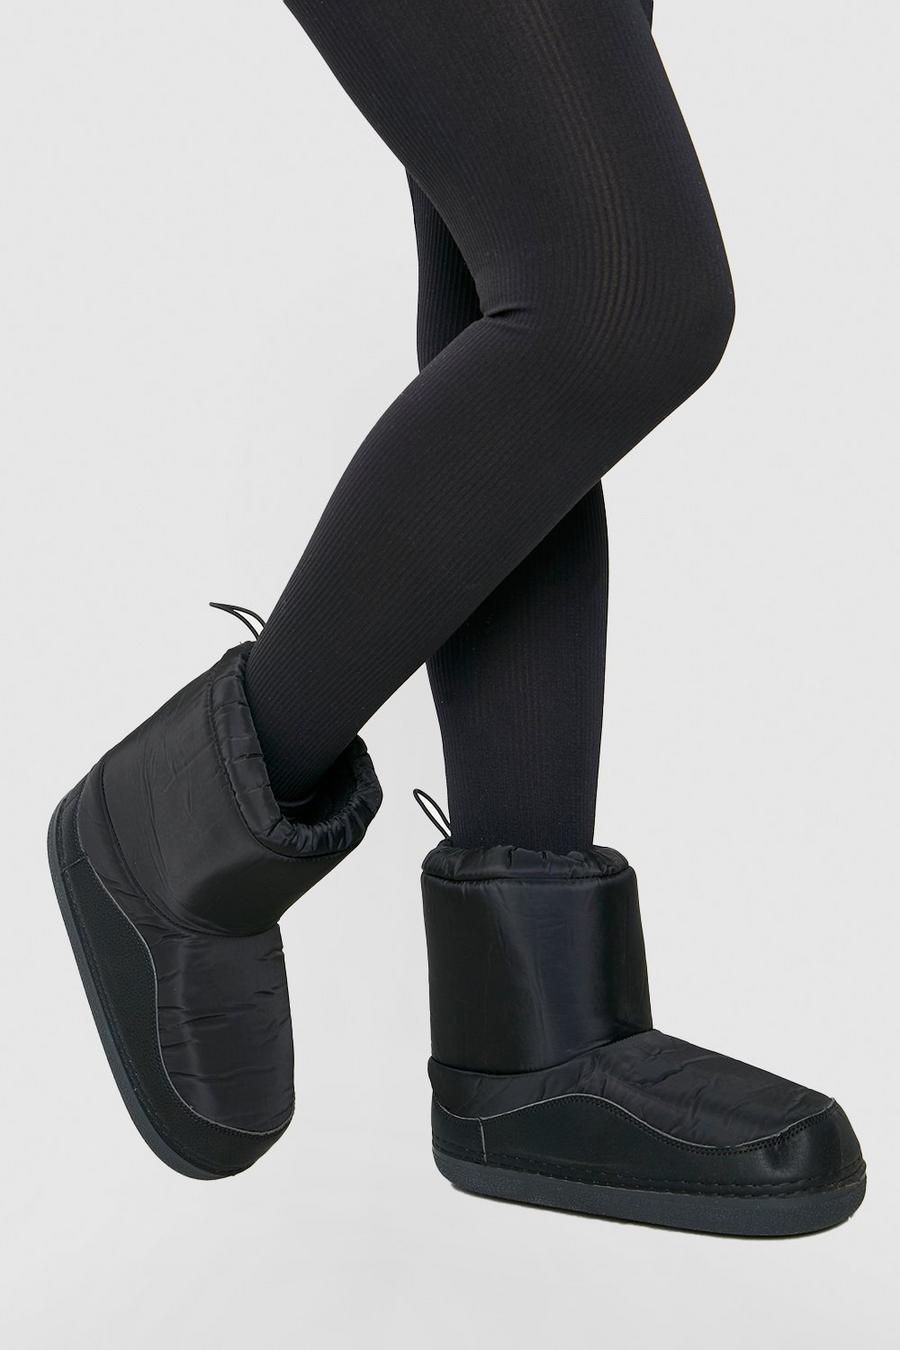 Black Padded Snug Boots